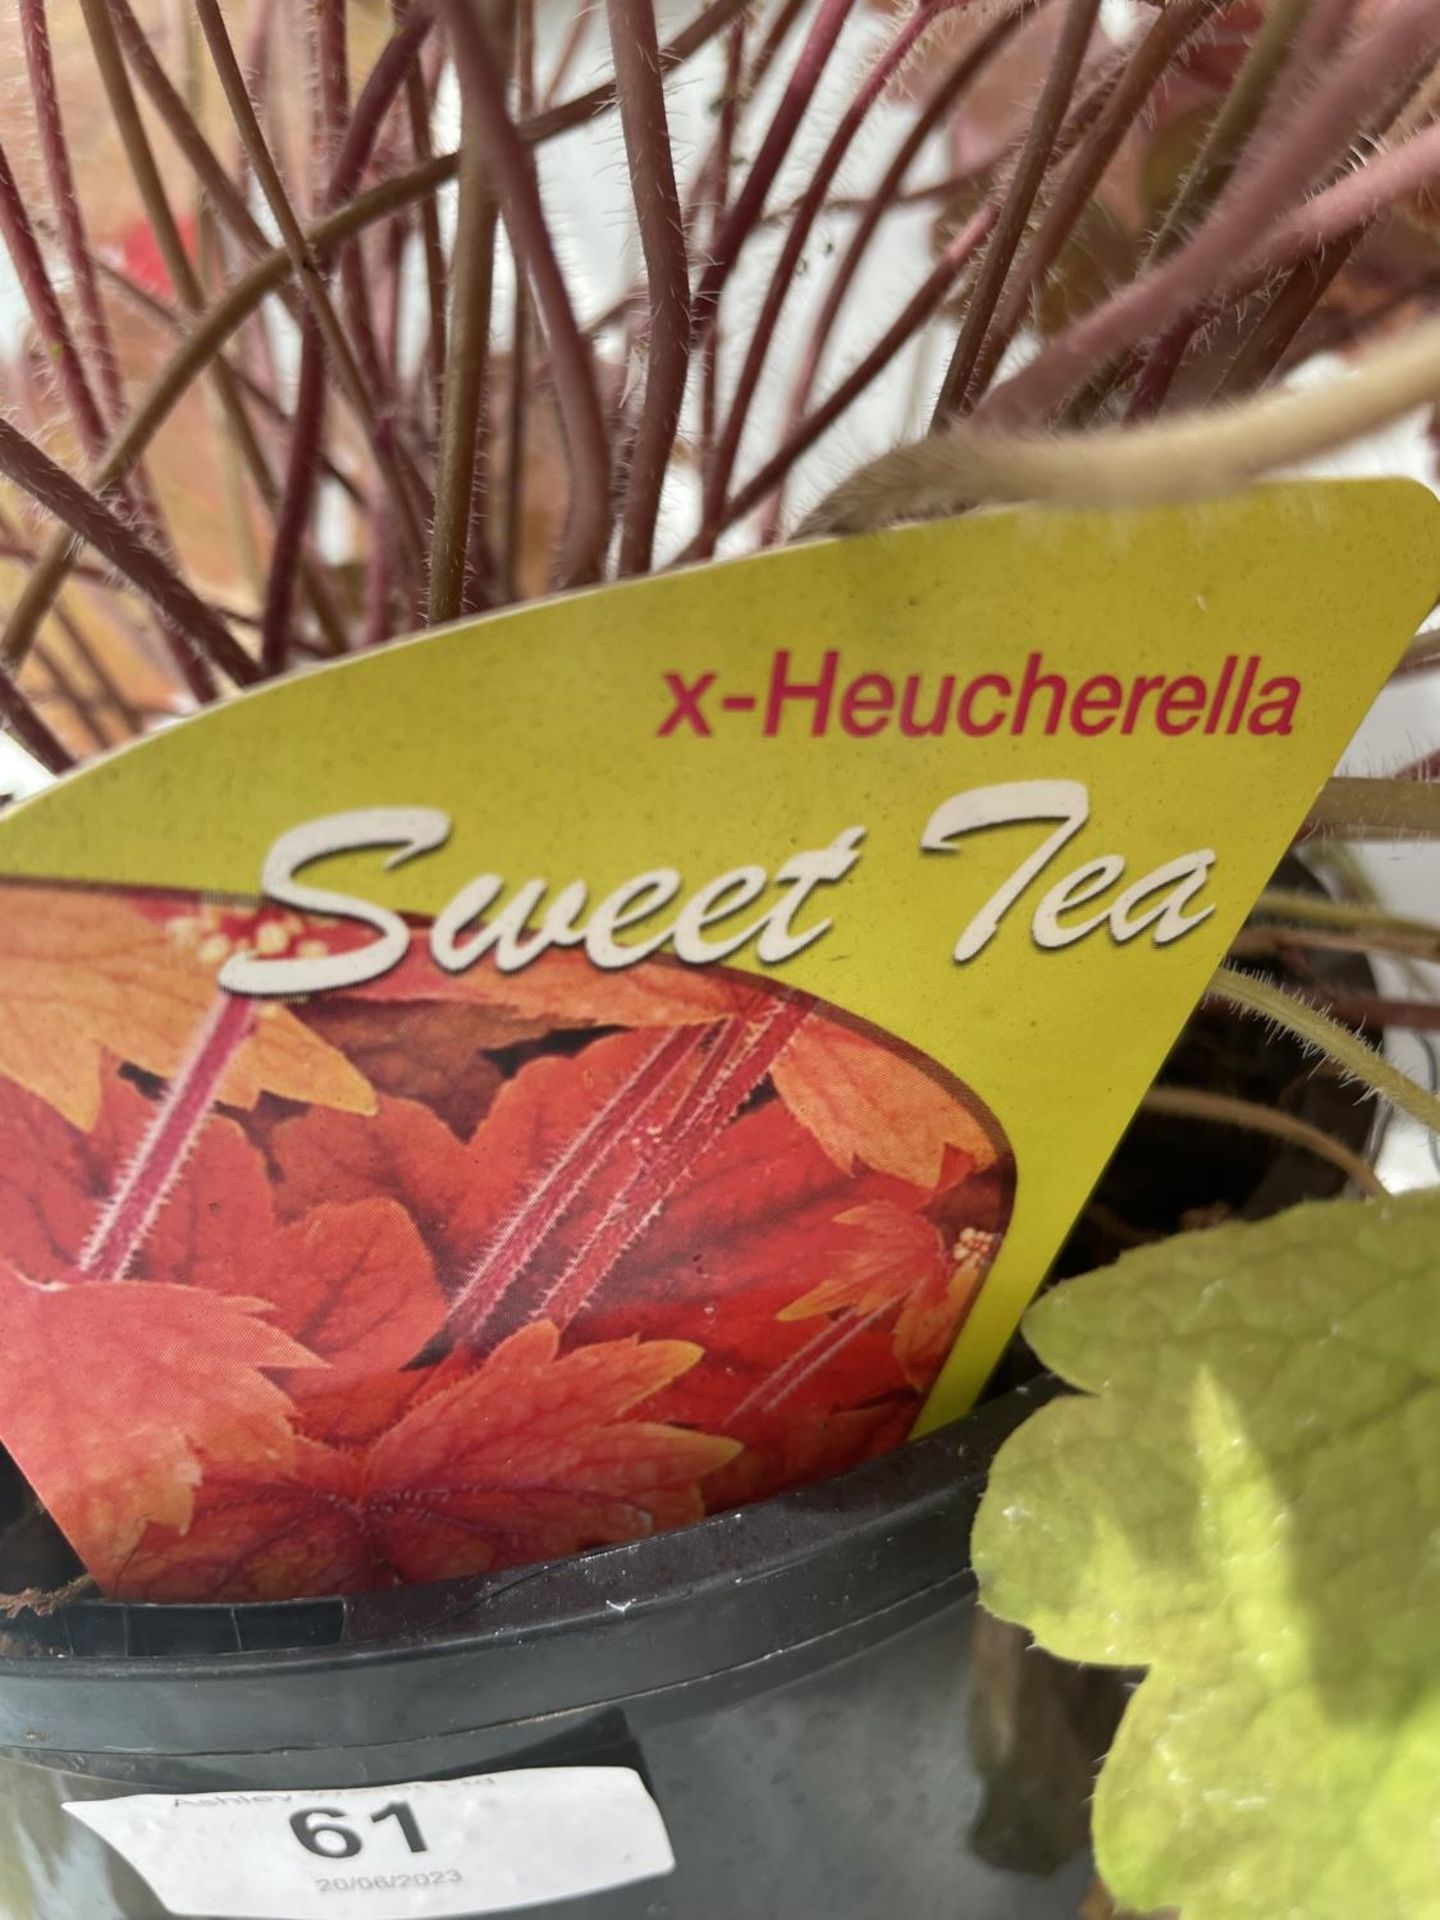 TWO HEUCHERELLA 'SWEET TEA' IN 3 LITRE POTS PLUS VAT - Image 3 of 3